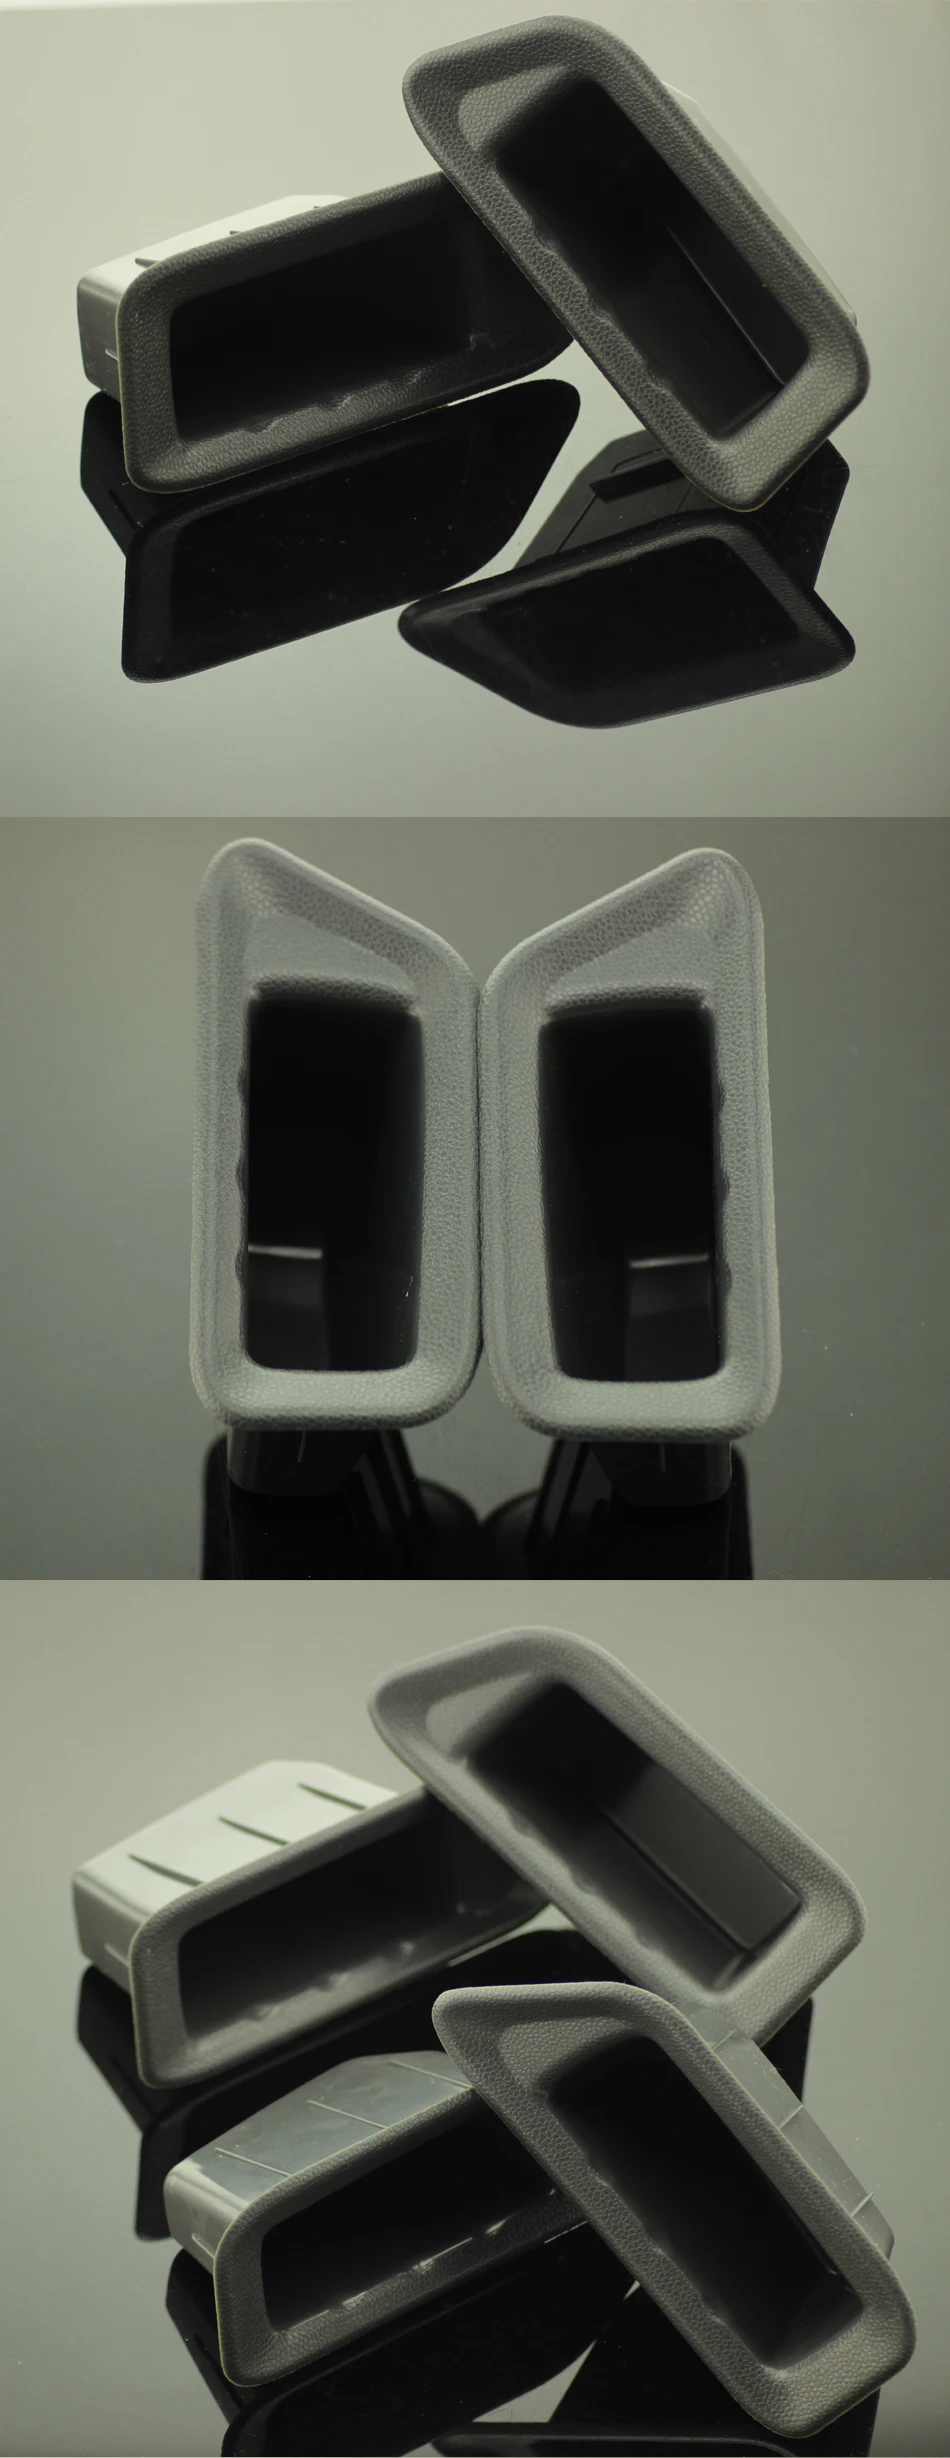 2 шт./компл. автомобиля ABS подлокотник двери контейнера для хранения коробка коробки с ручками чехол для Ford Ecosport 2012- Запчасти аксессуары